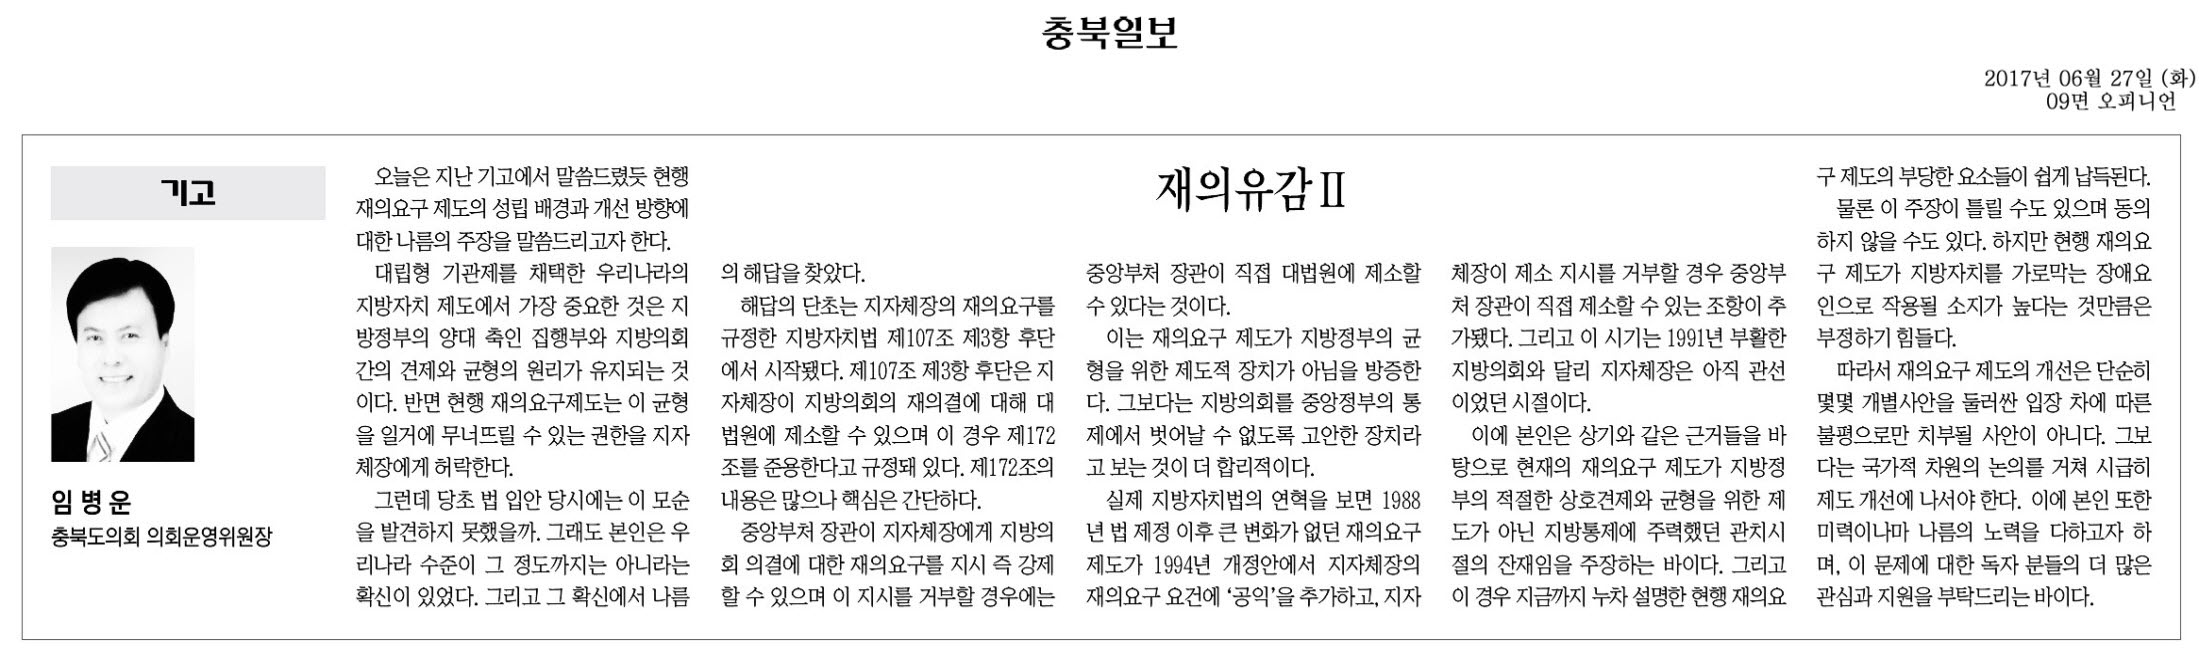 재의유감II-임병운 의원(충북일보 2017년 6월 27일) - 1